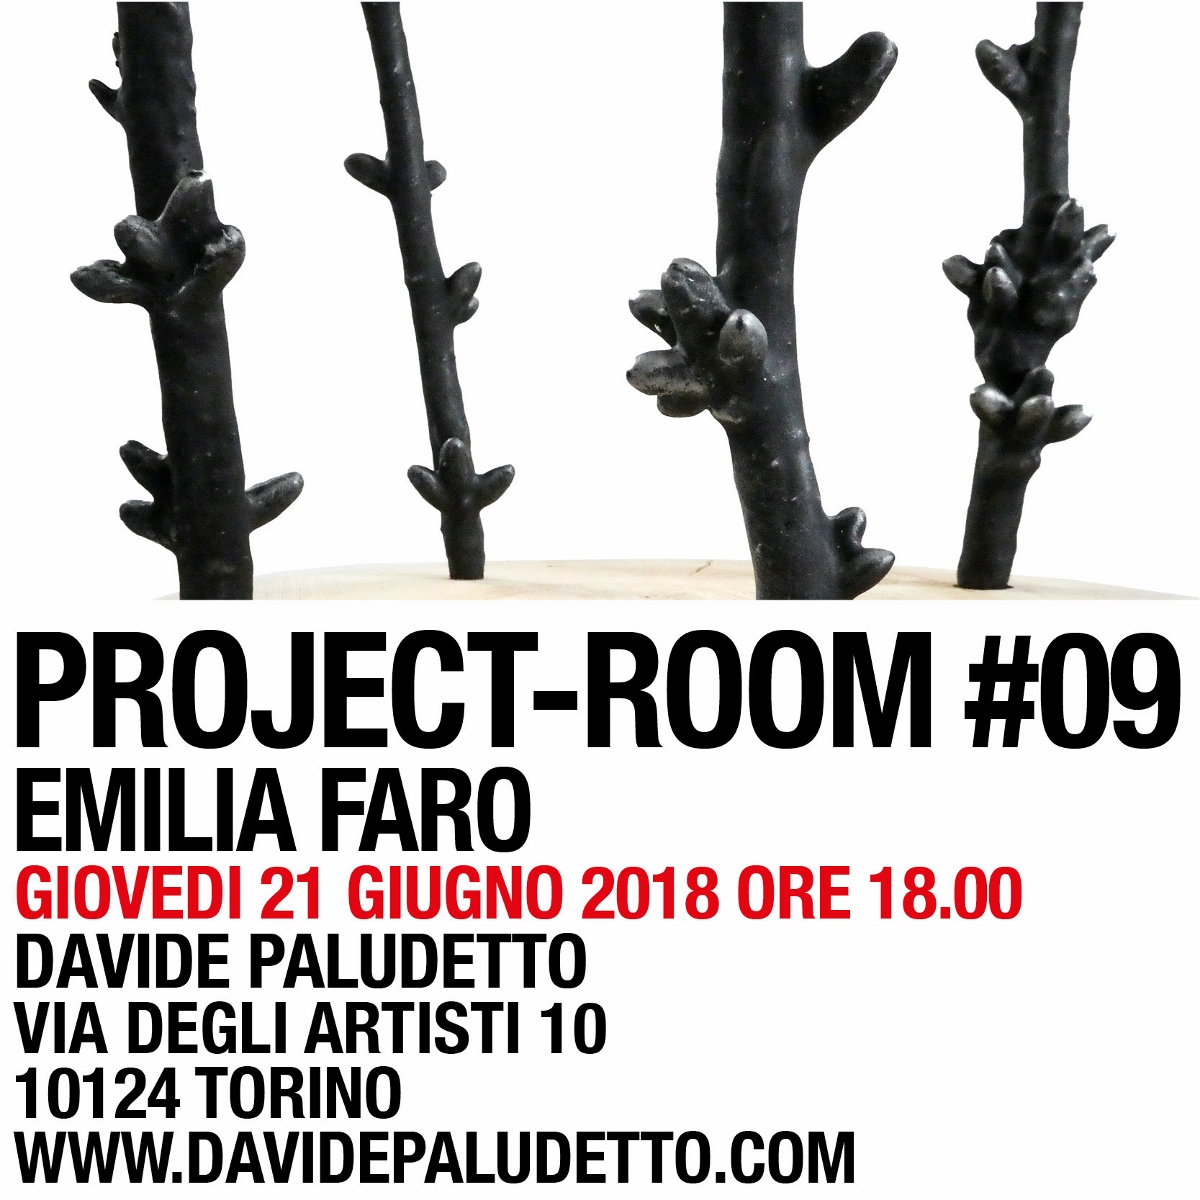 Project room #9 - Emilia Faro